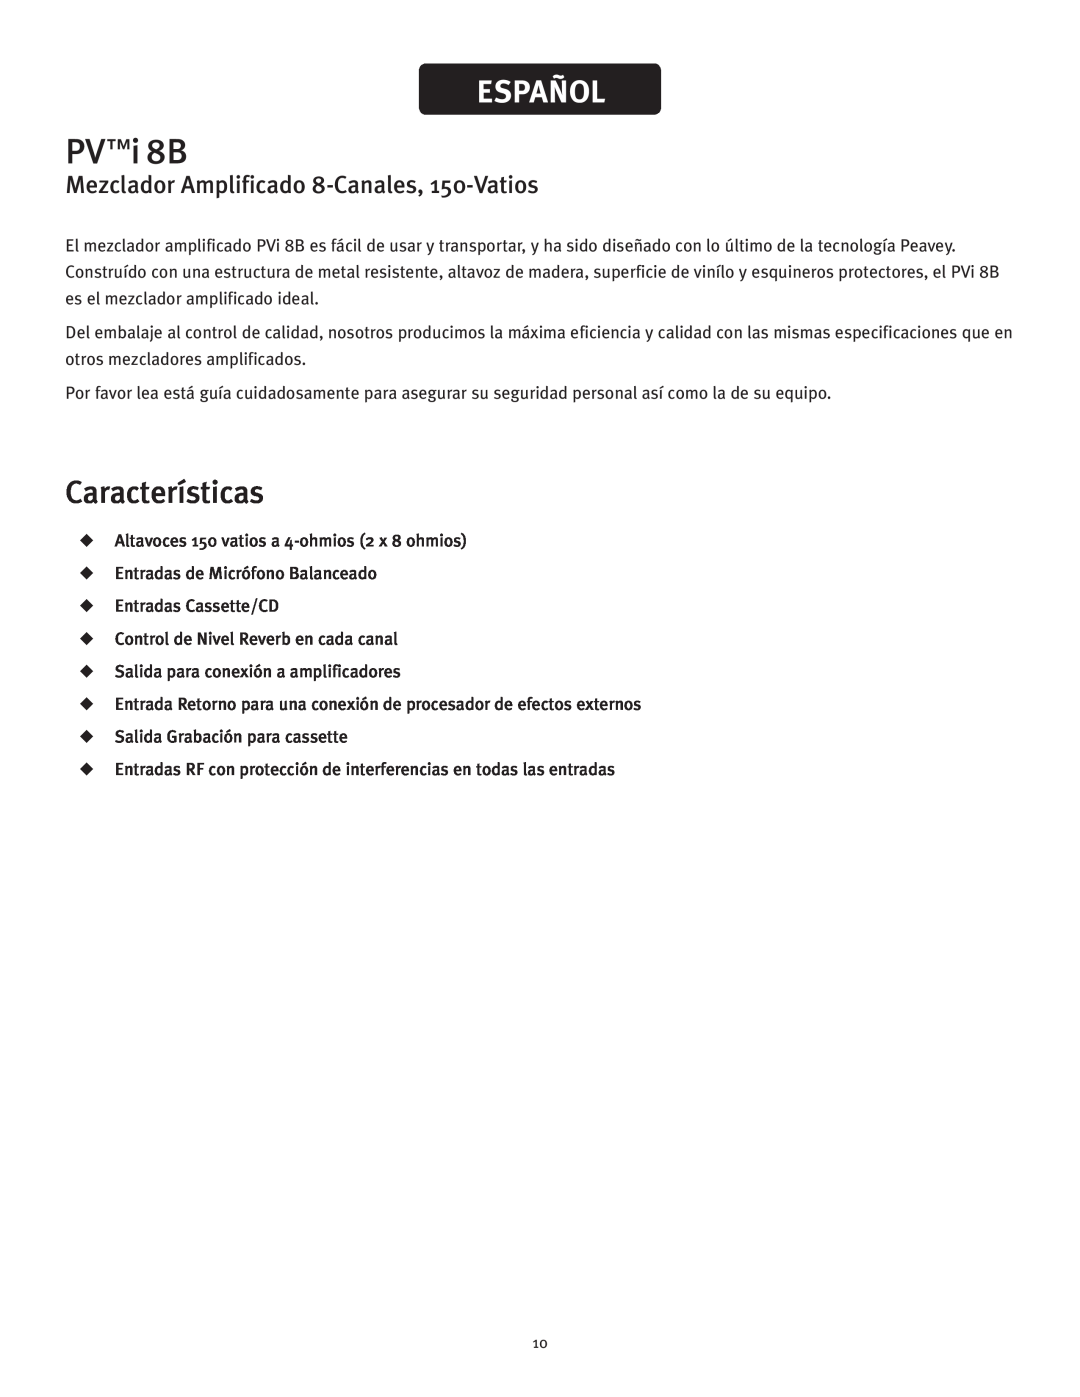 Peavey PVTMi 8B manual Español, Características, Mezclador Amplificado 8-Canales, 150-Vatios, PVi 8B 